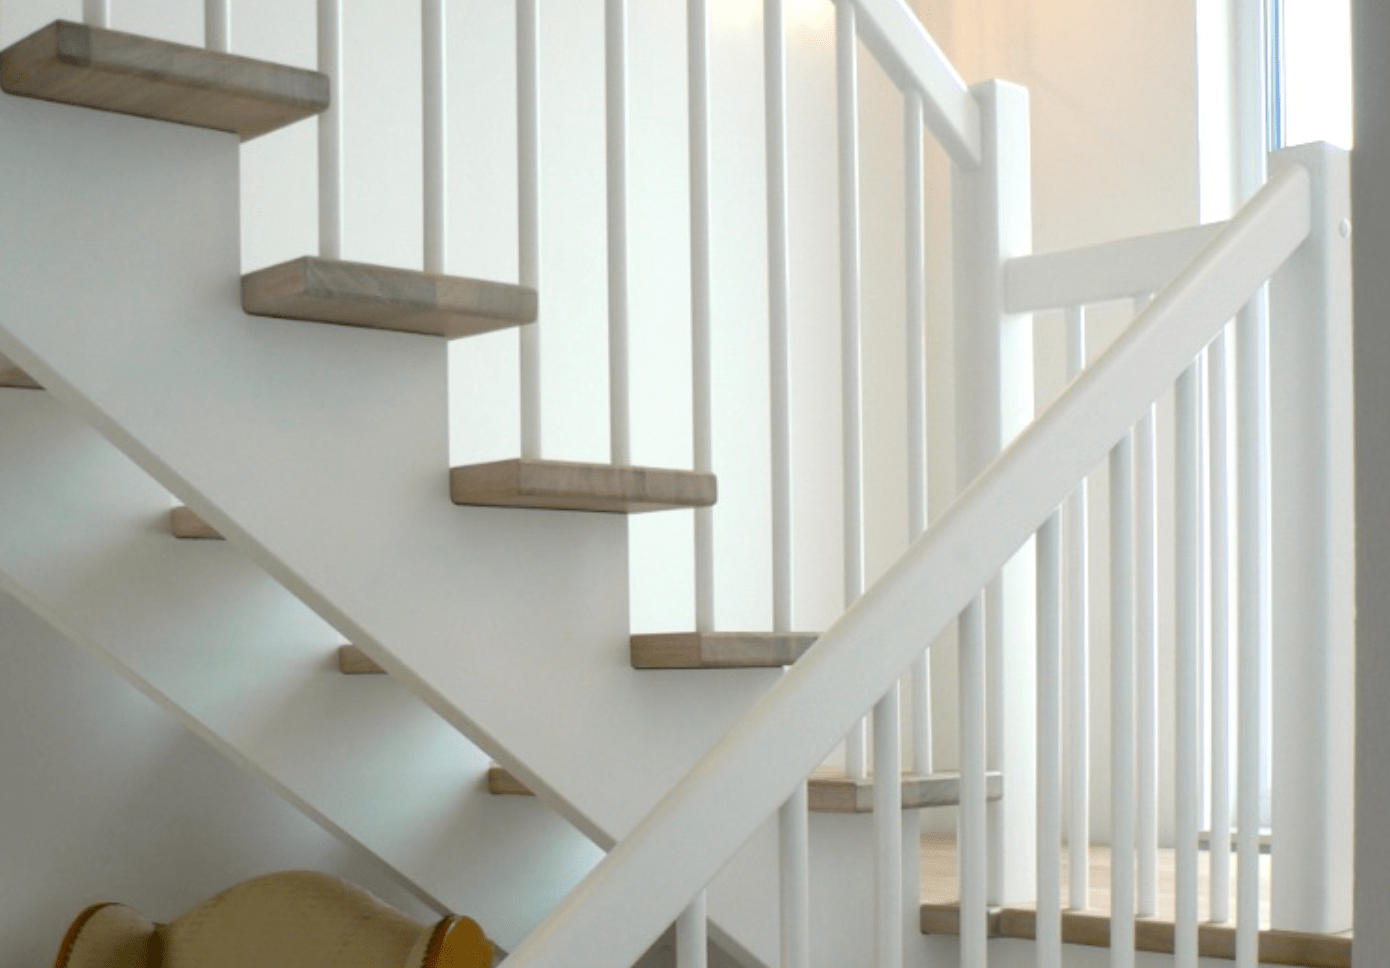 Opsadlet trappe (1) og andre kvalitetstrapper